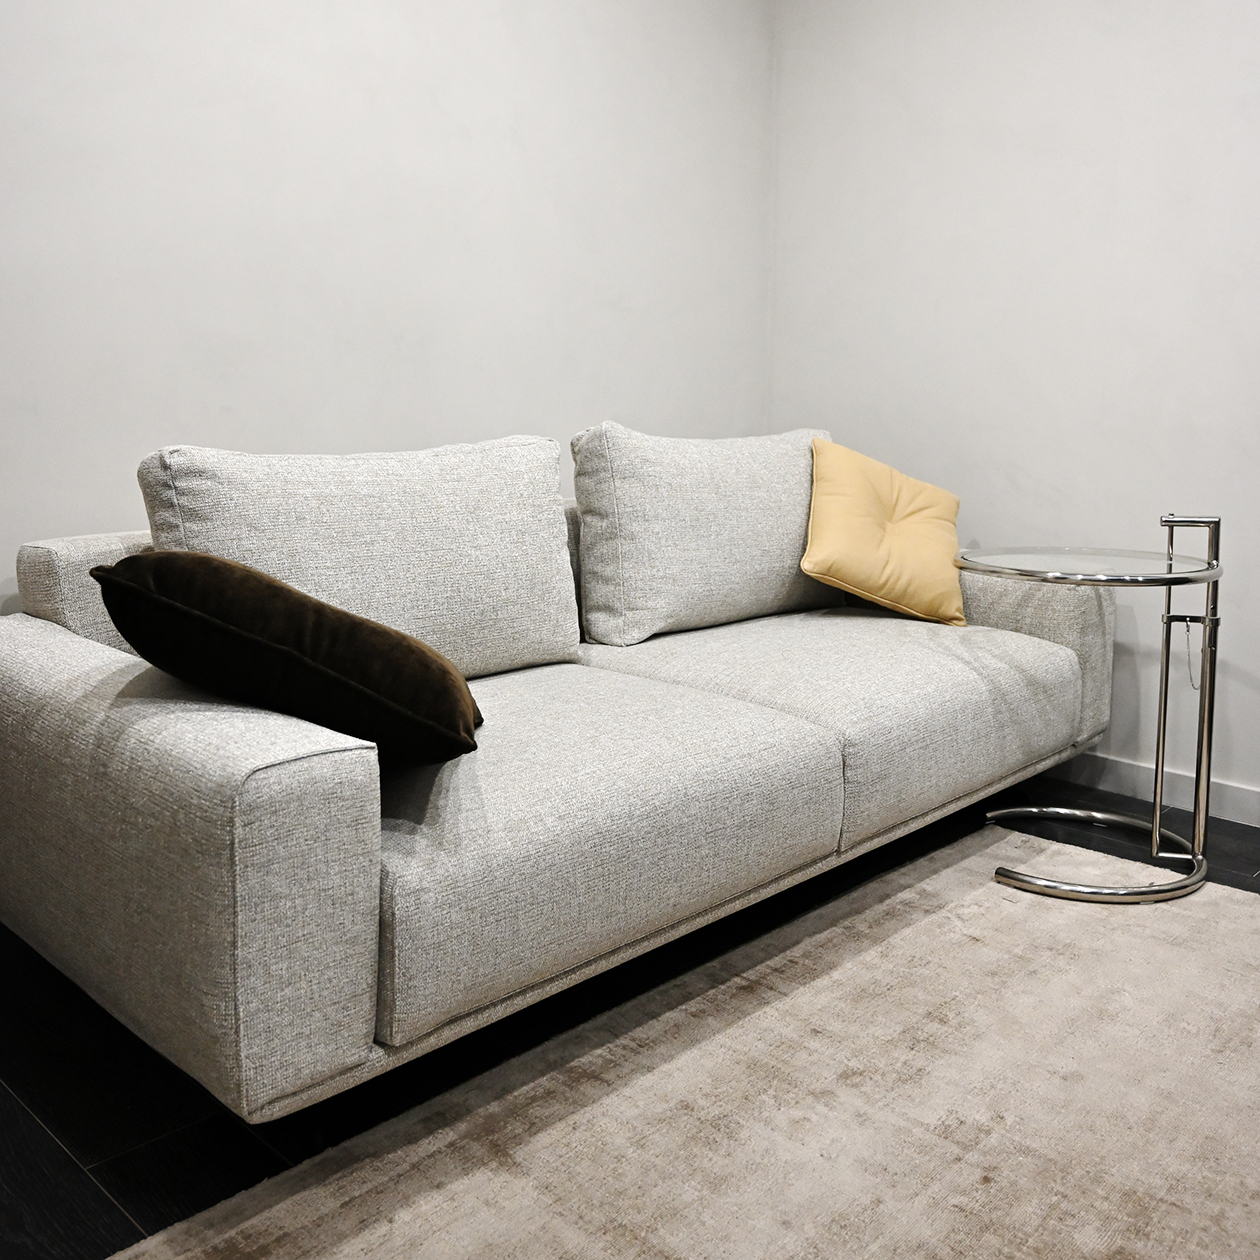 В кабинете также есть диван, и один из мониторов обращен к нему. Эта мебель стоила 193 000 ₽, бренд — Skdesign